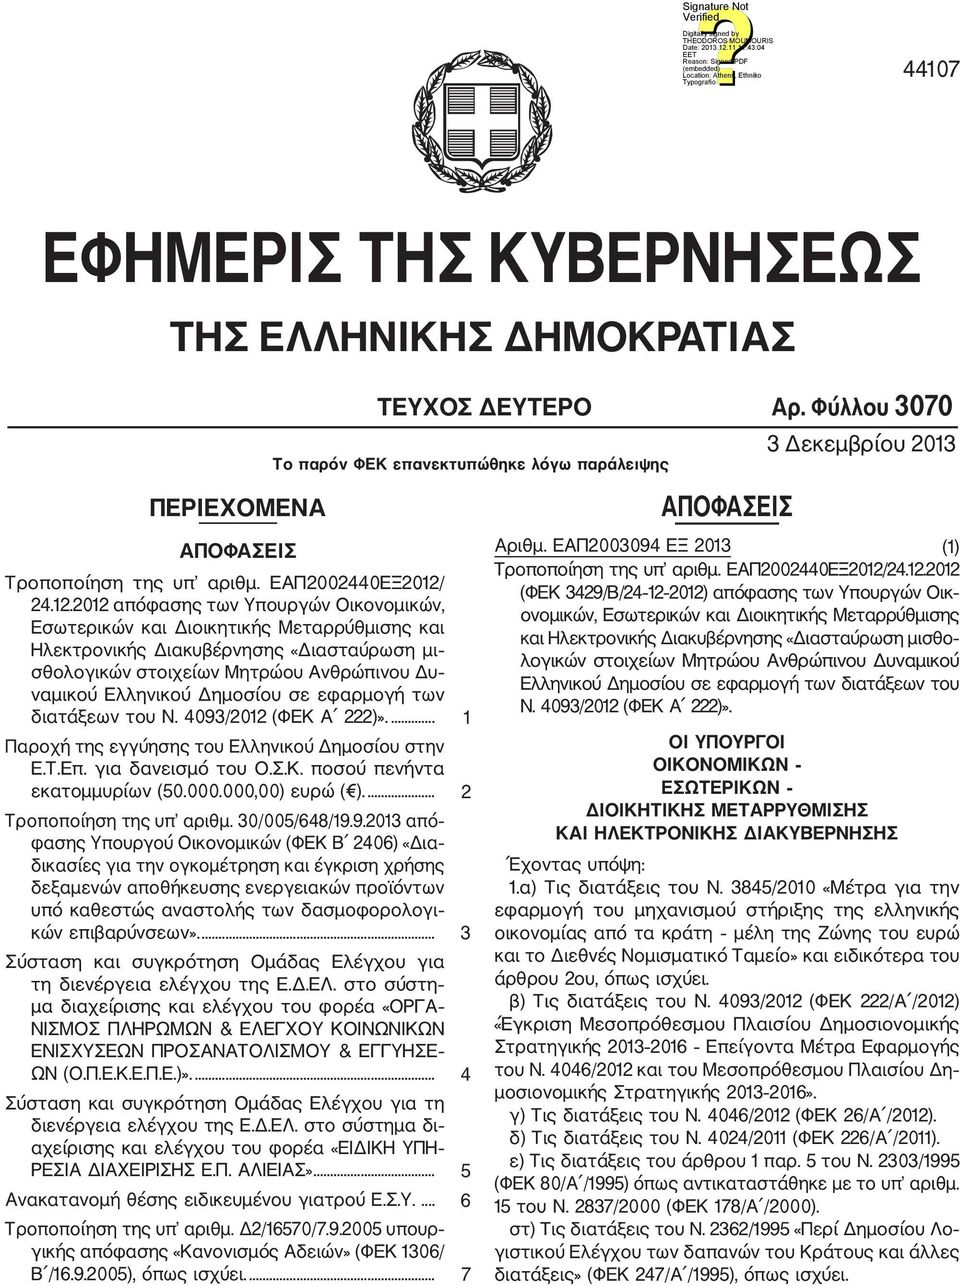 2012 απόφασης των Υπουργών Οικονομικών, Εσωτερικών και Διοικητικής Μεταρρύθμισης και Ηλεκτρονικής Διακυβέρνησης «Διασταύρωση μι σθολογικών στοιχείων Μητρώου Ανθρώπινου Δυ ναμικού Ελληνικού Δημοσίου